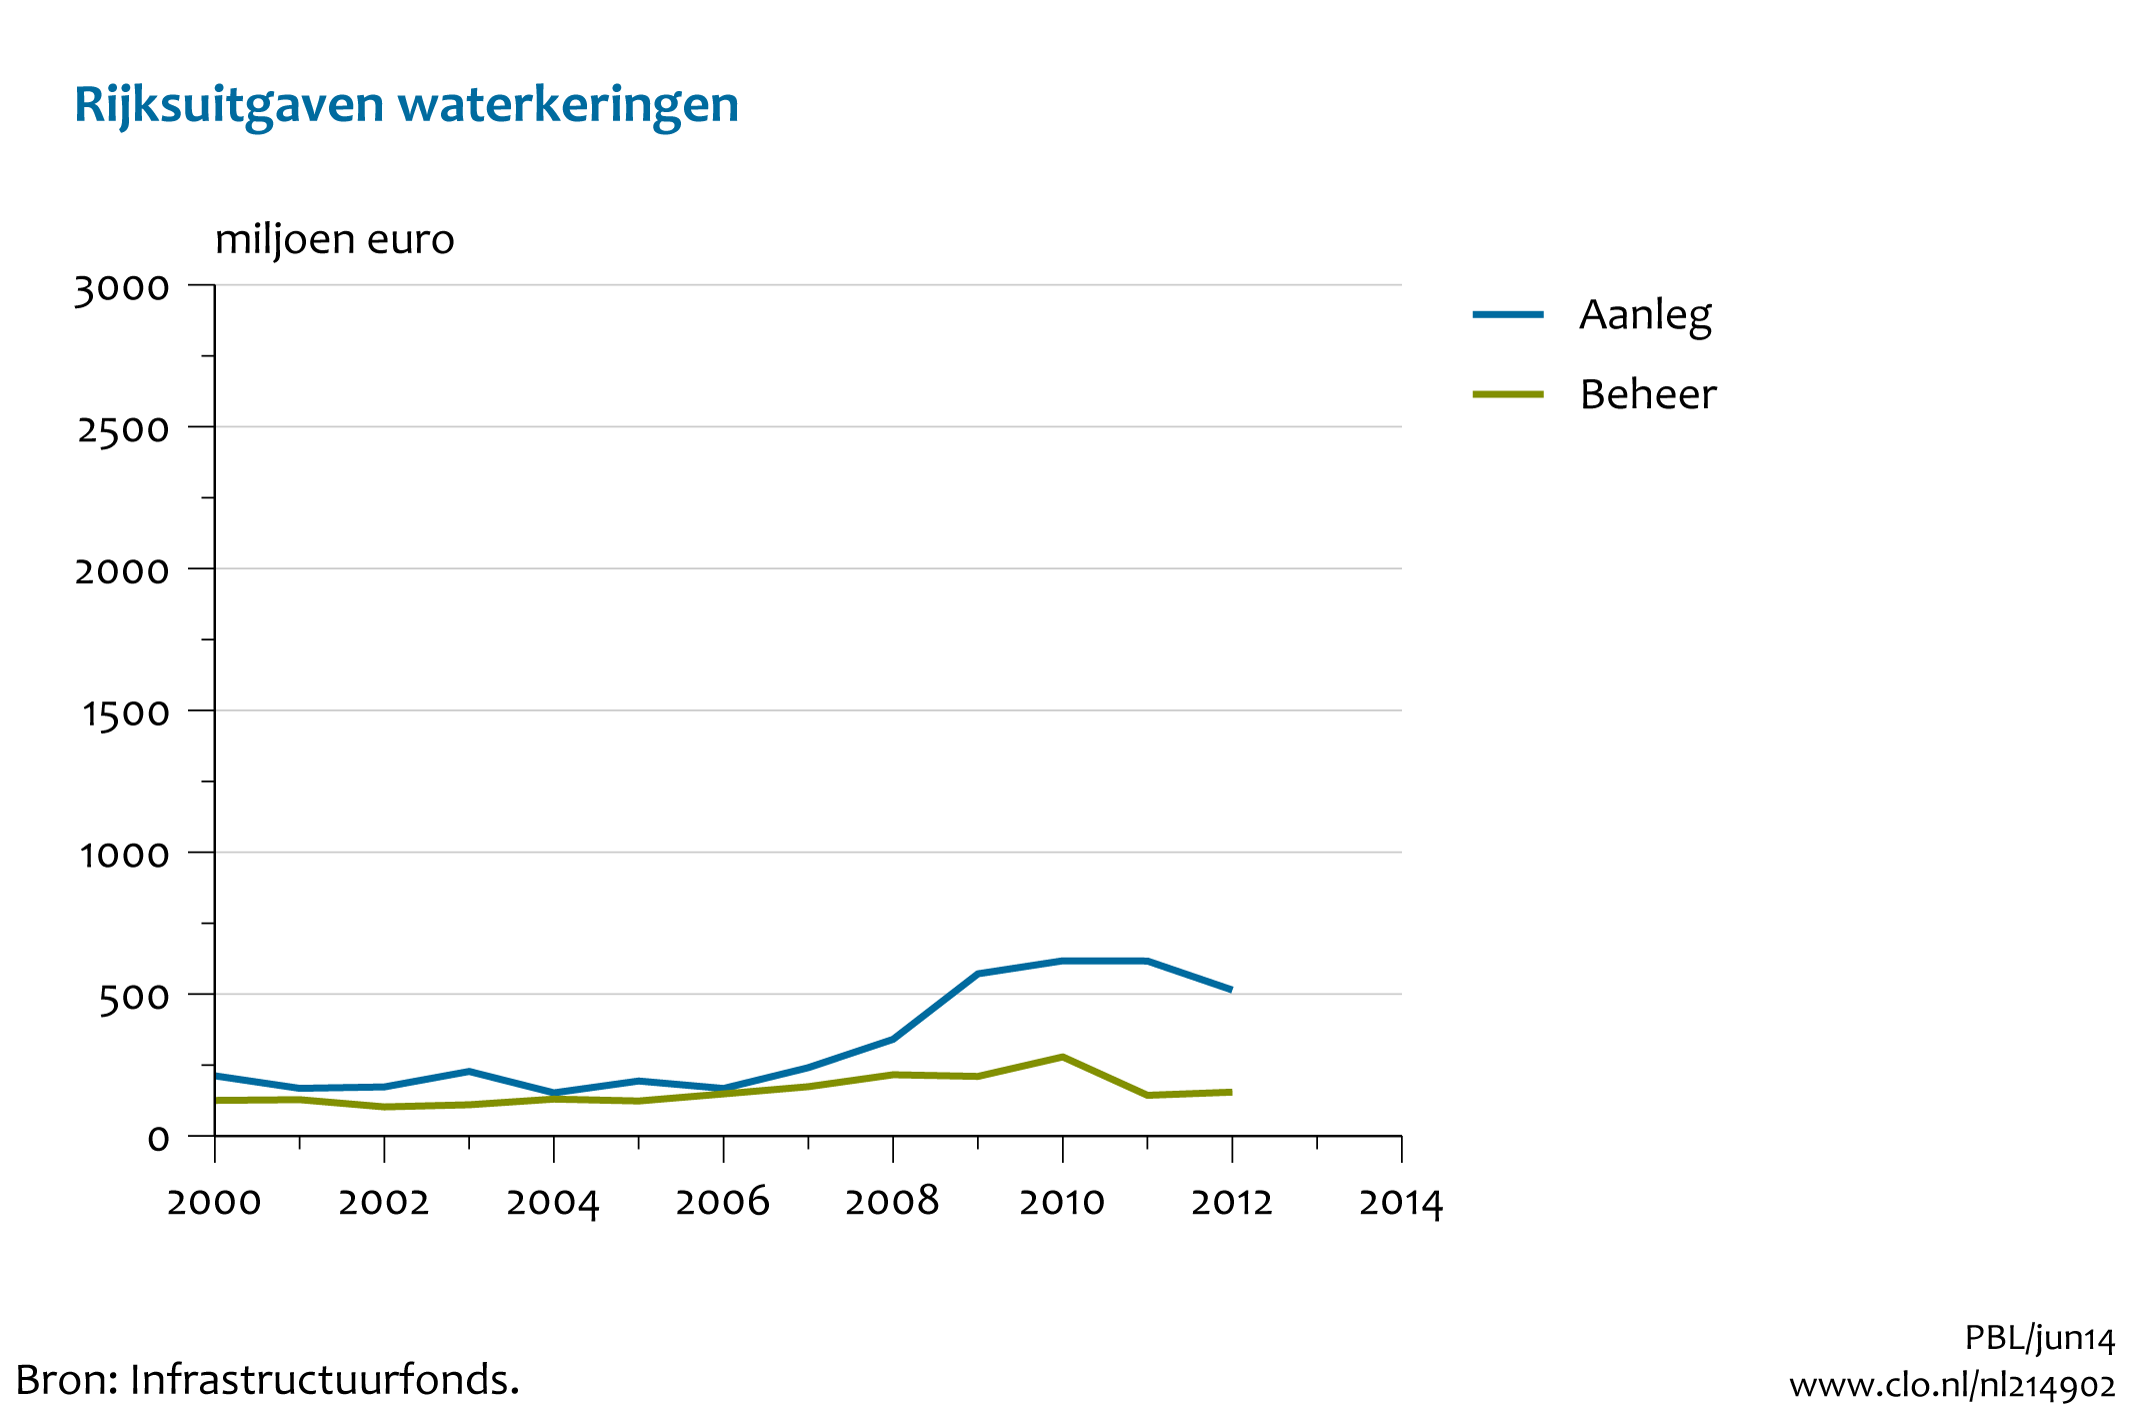 Figuur Rijksuitgaven aanleg en beheer waterkeringen in miljoenen euro's. In de rest van de tekst wordt deze figuur uitgebreider uitgelegd.